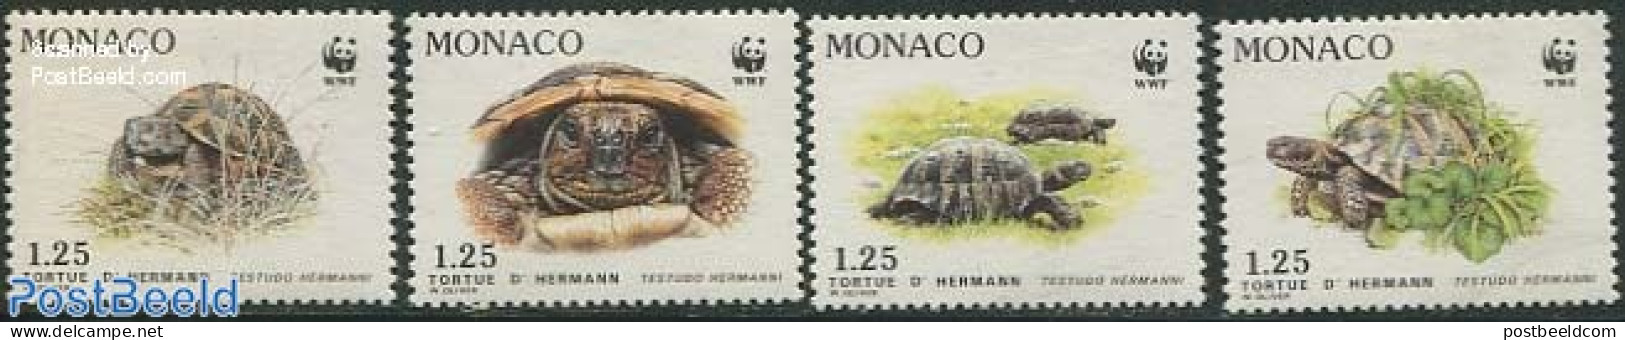 Monaco 1991 WWF, Turtles 4v, Mint NH, Nature - Turtles - World Wildlife Fund (WWF) - Ongebruikt